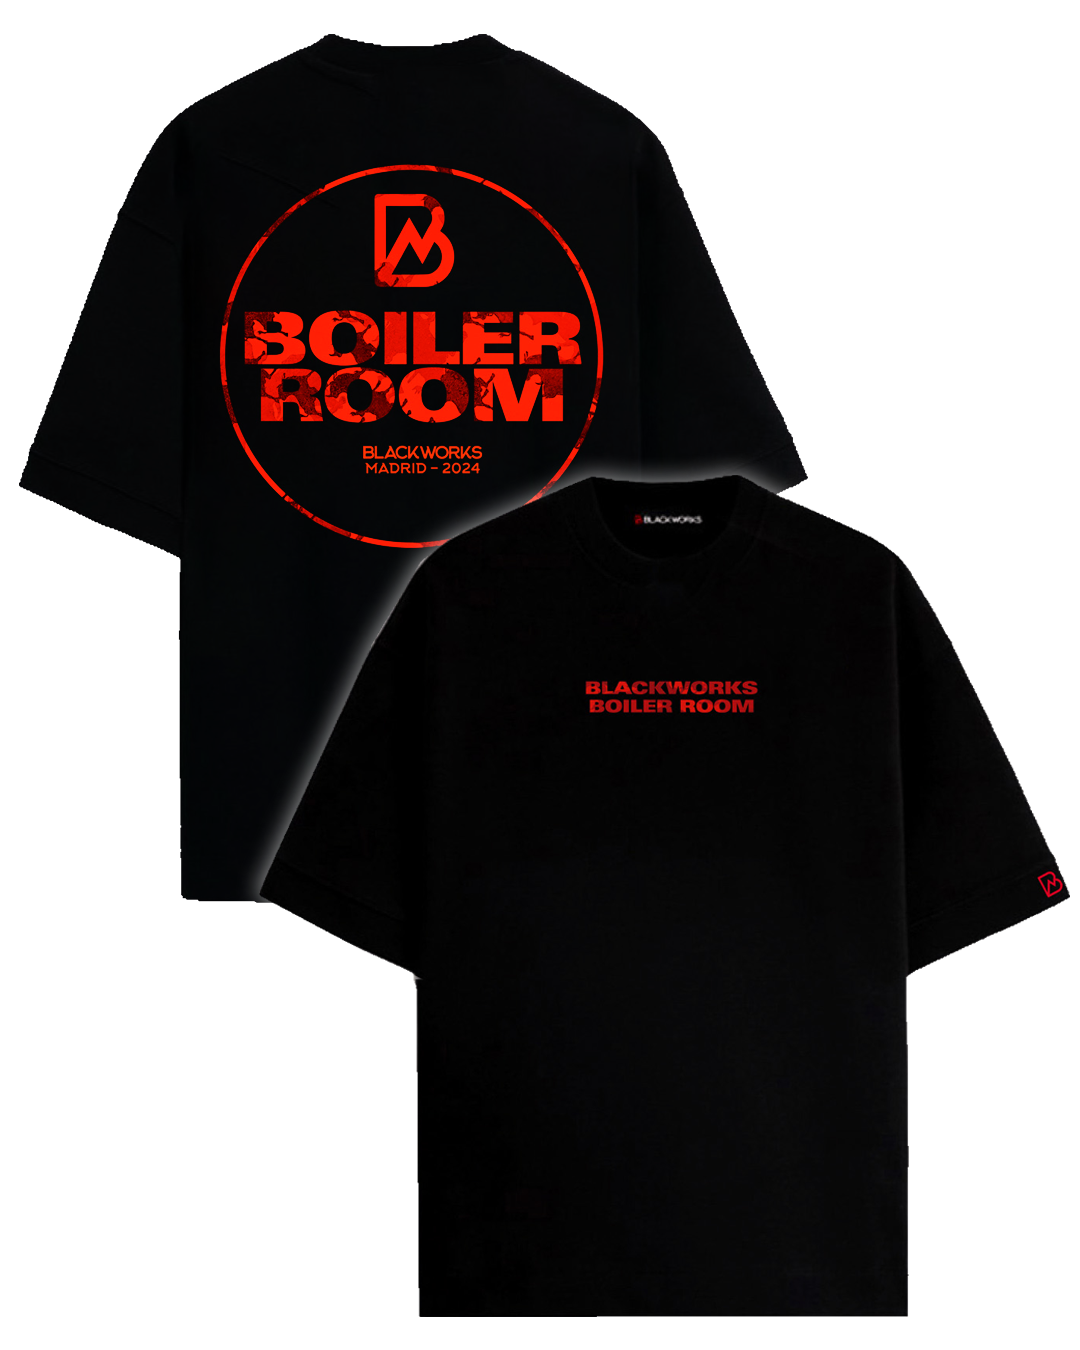 Merchandising Boiler Room x Blackworks